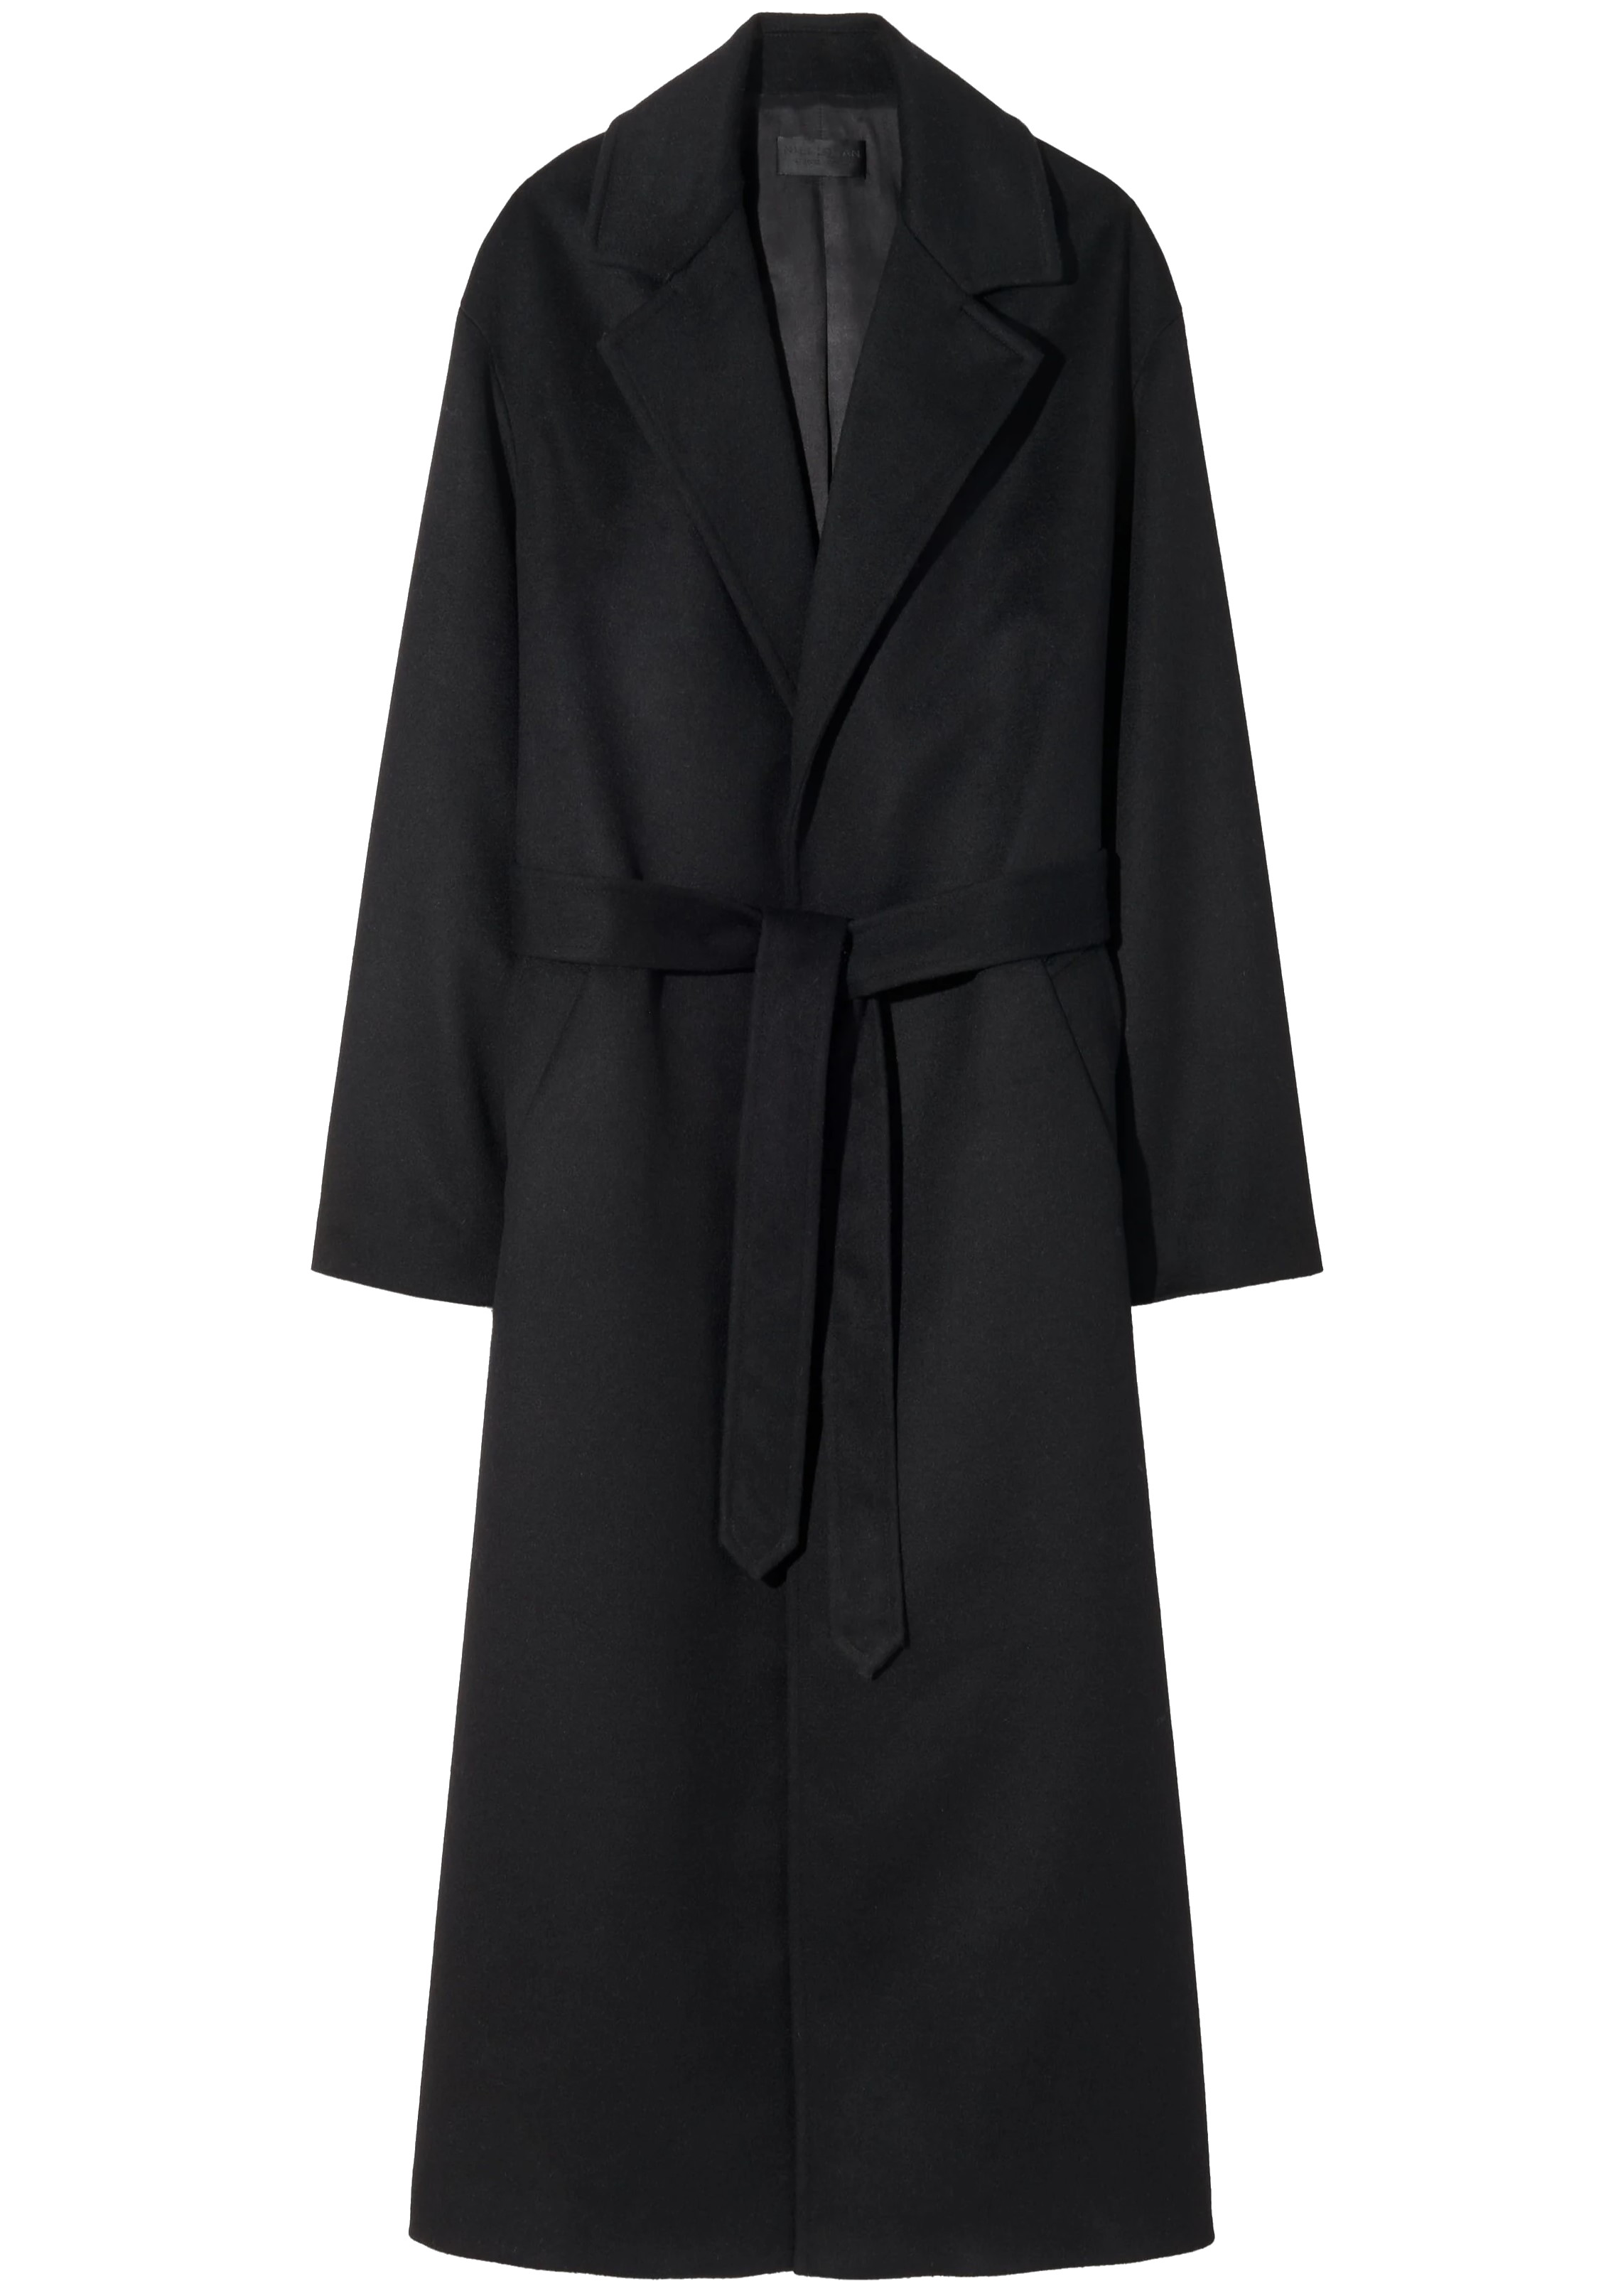 NILI LOTAN Fabien Wrap Coat in Black